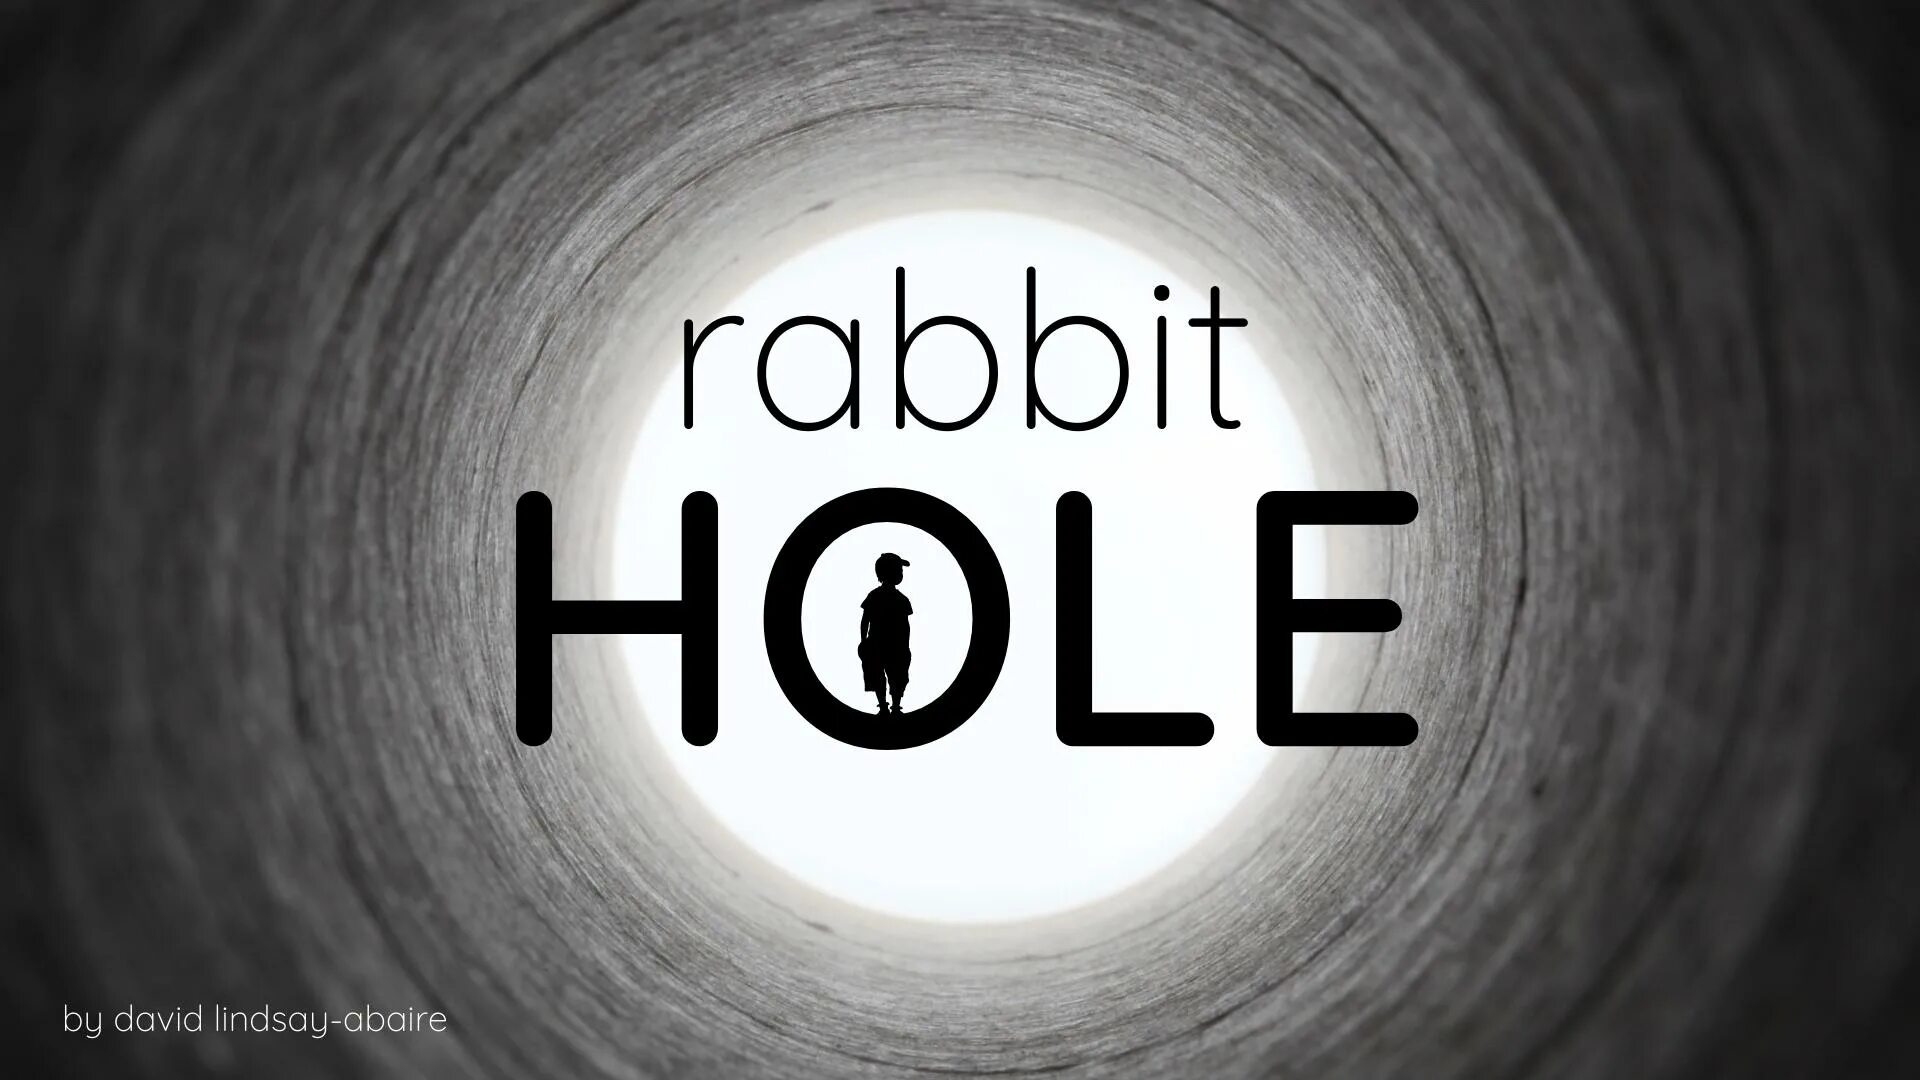 Rabbit hole download. Rabbit hole. Rabbit hole песня. Rabиit hole. Rabbit hole Crypto.